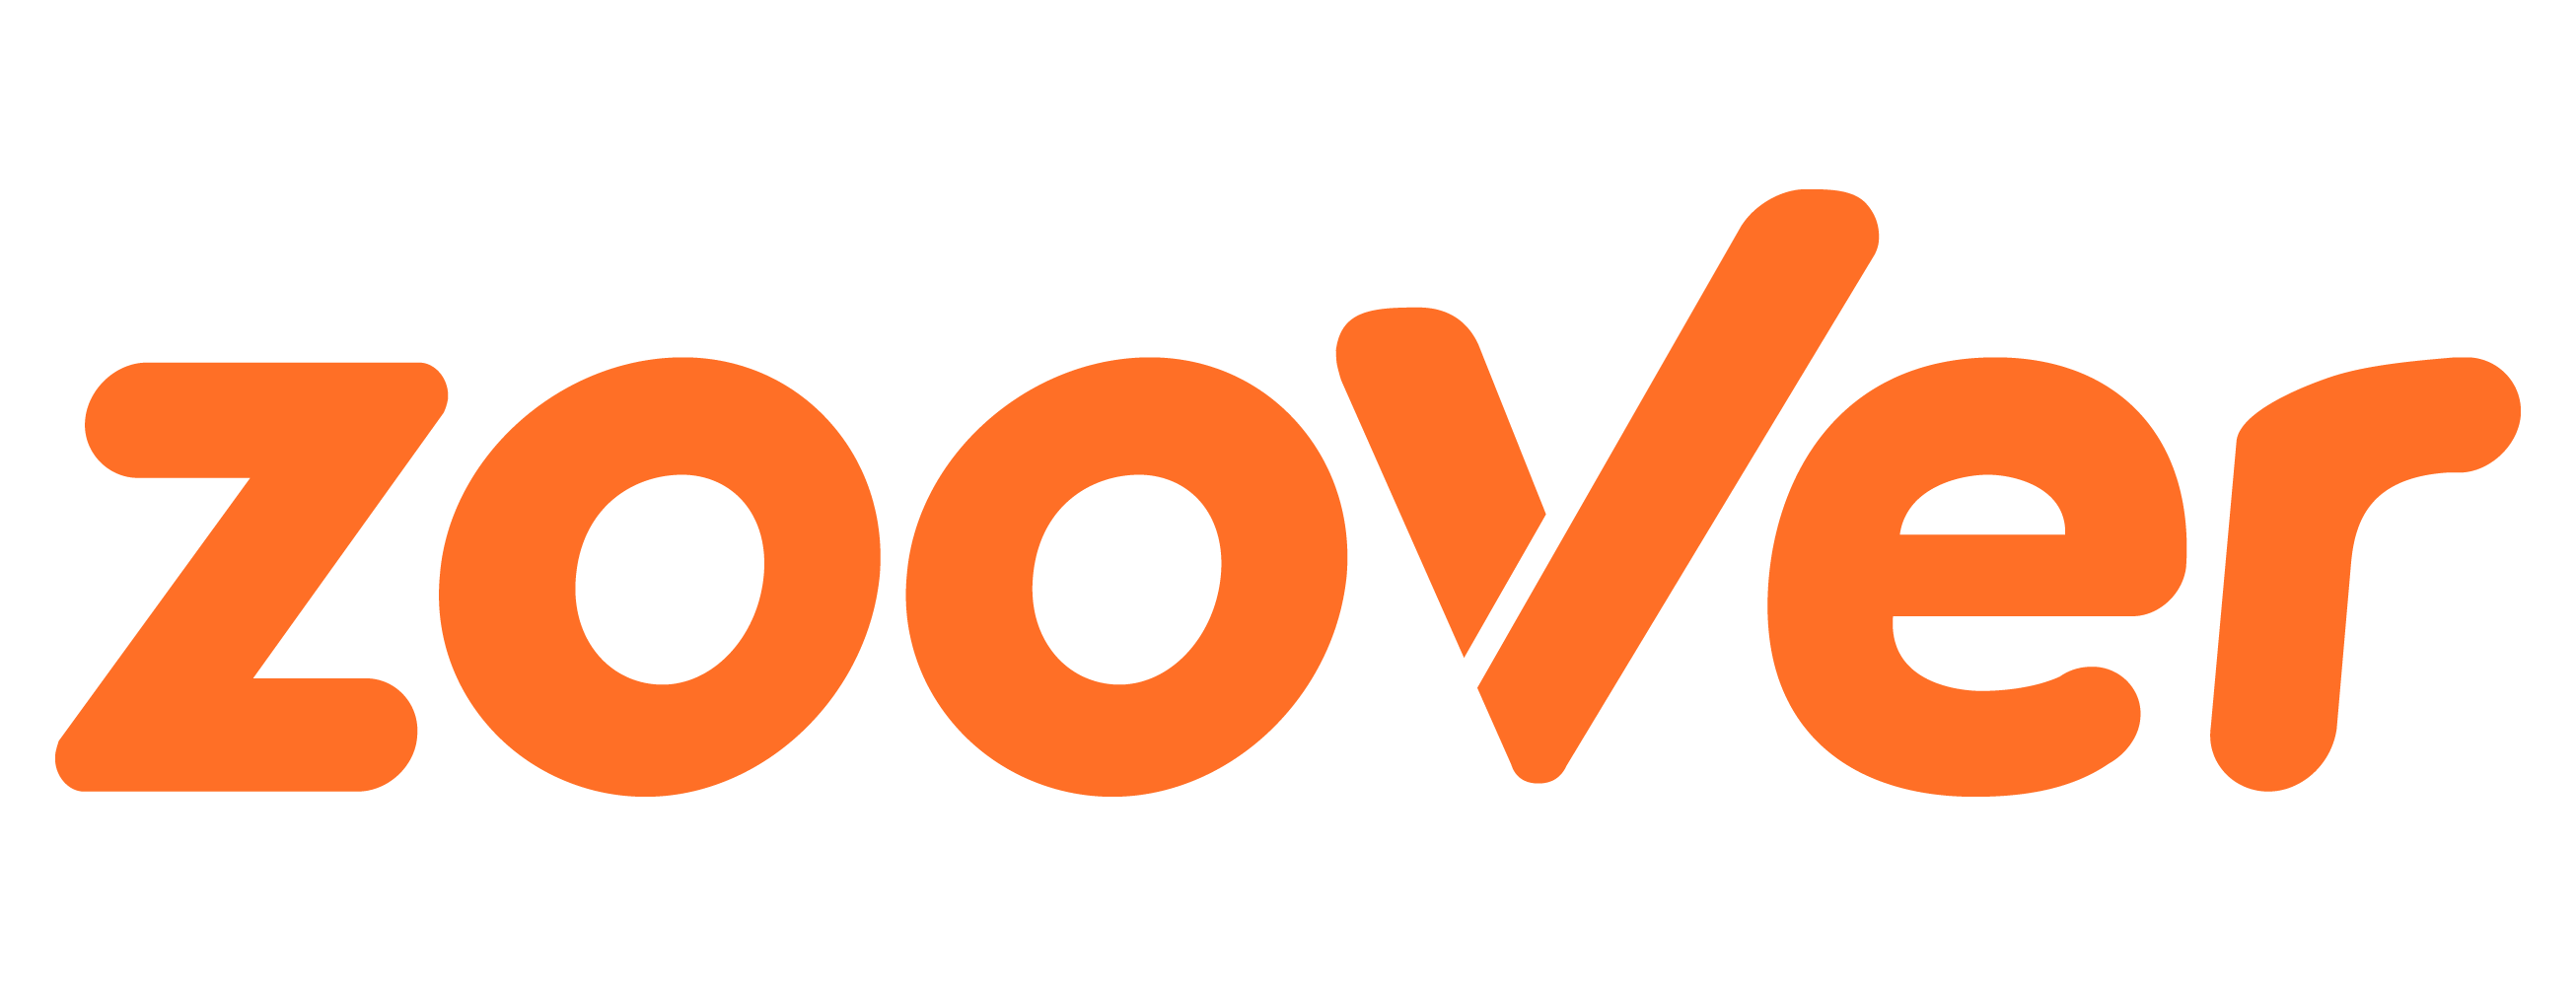 Zoover.nl logo